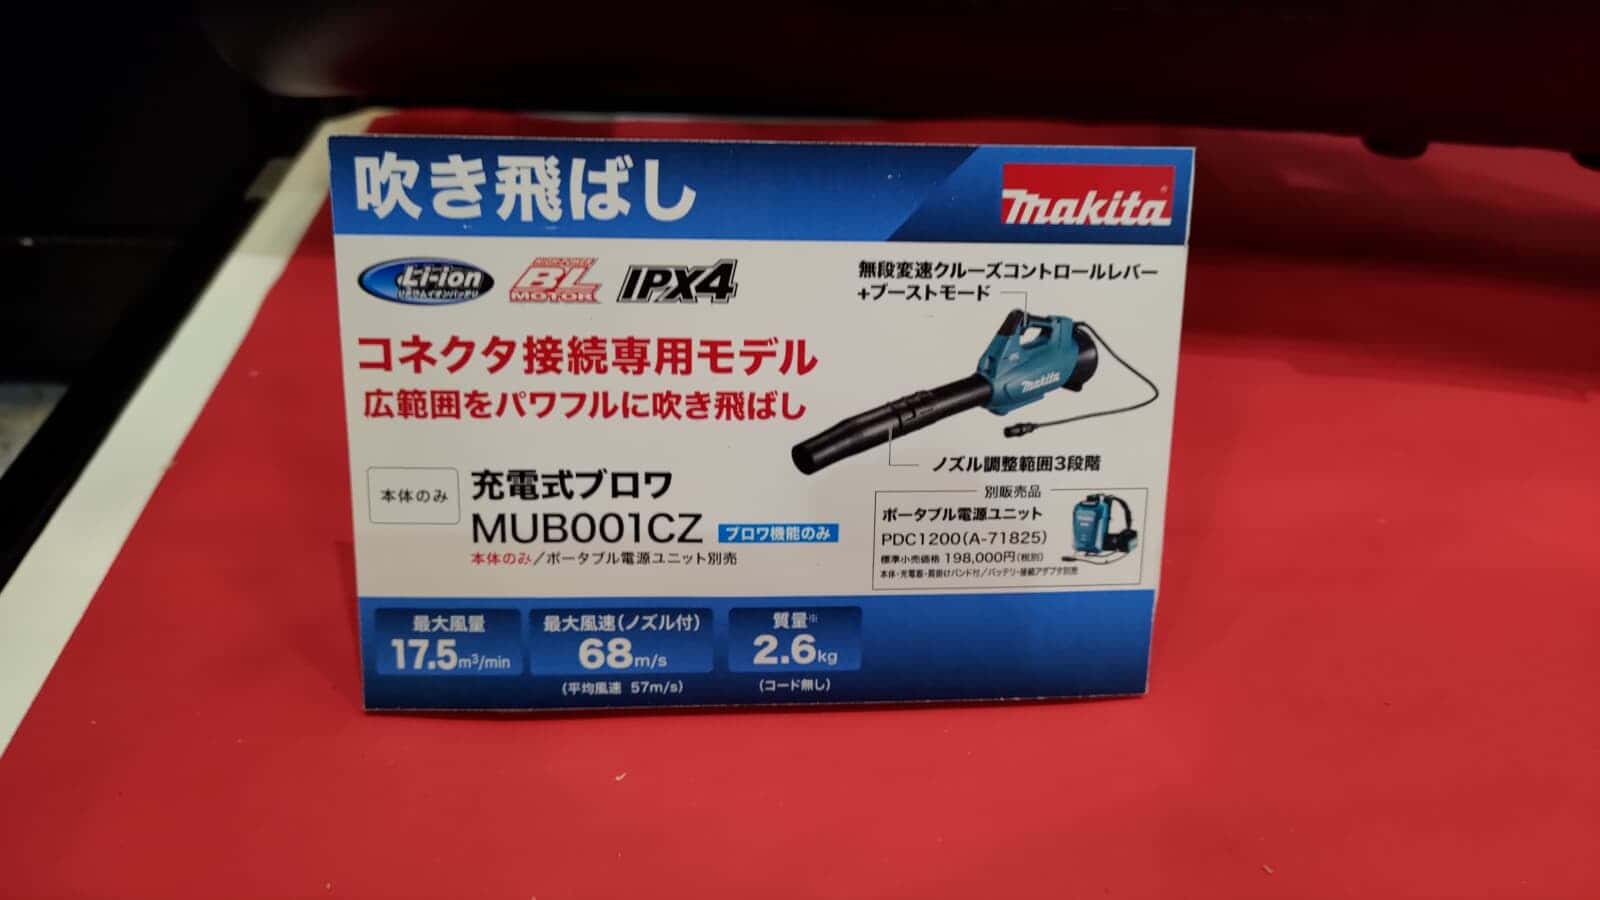 マキタ MUB001CZ 充電式ブロワが発売、コネクタ接続専用の高出力園芸